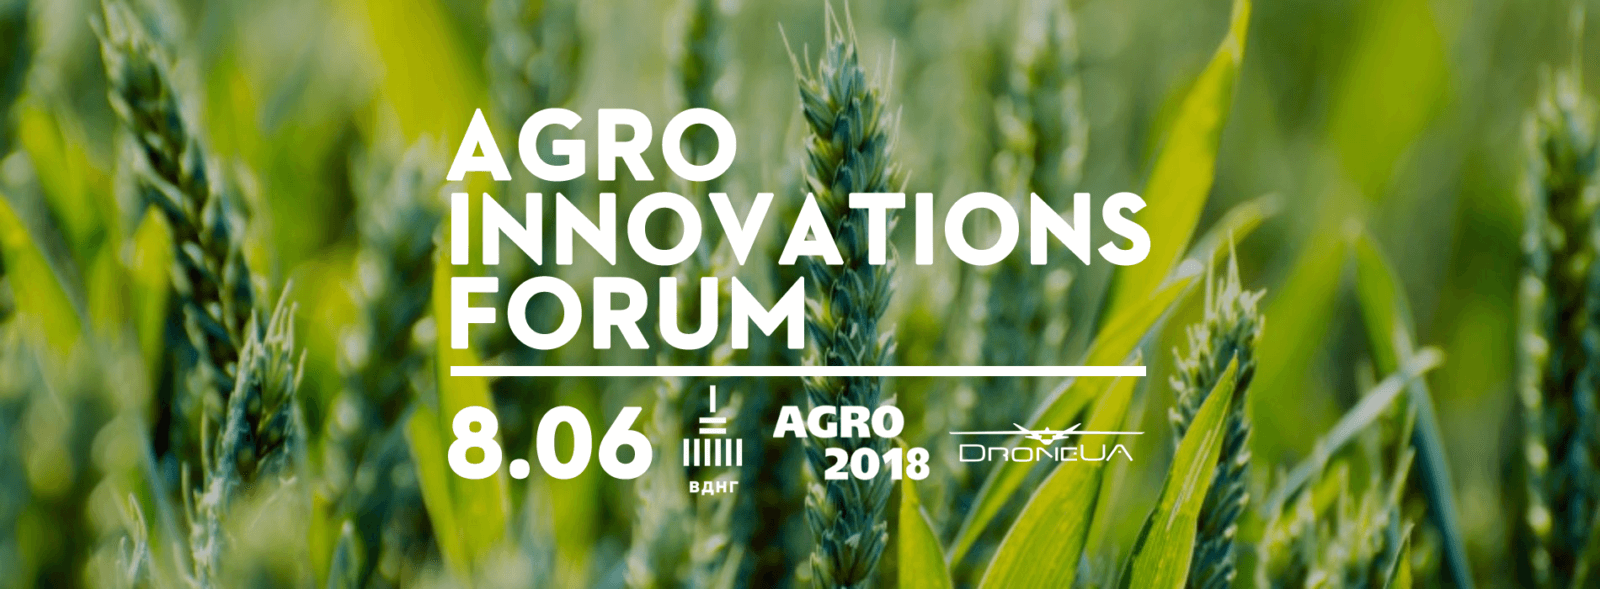 Agro Innovations Forum 2018 - Об'єднуємо агроінноваторів!